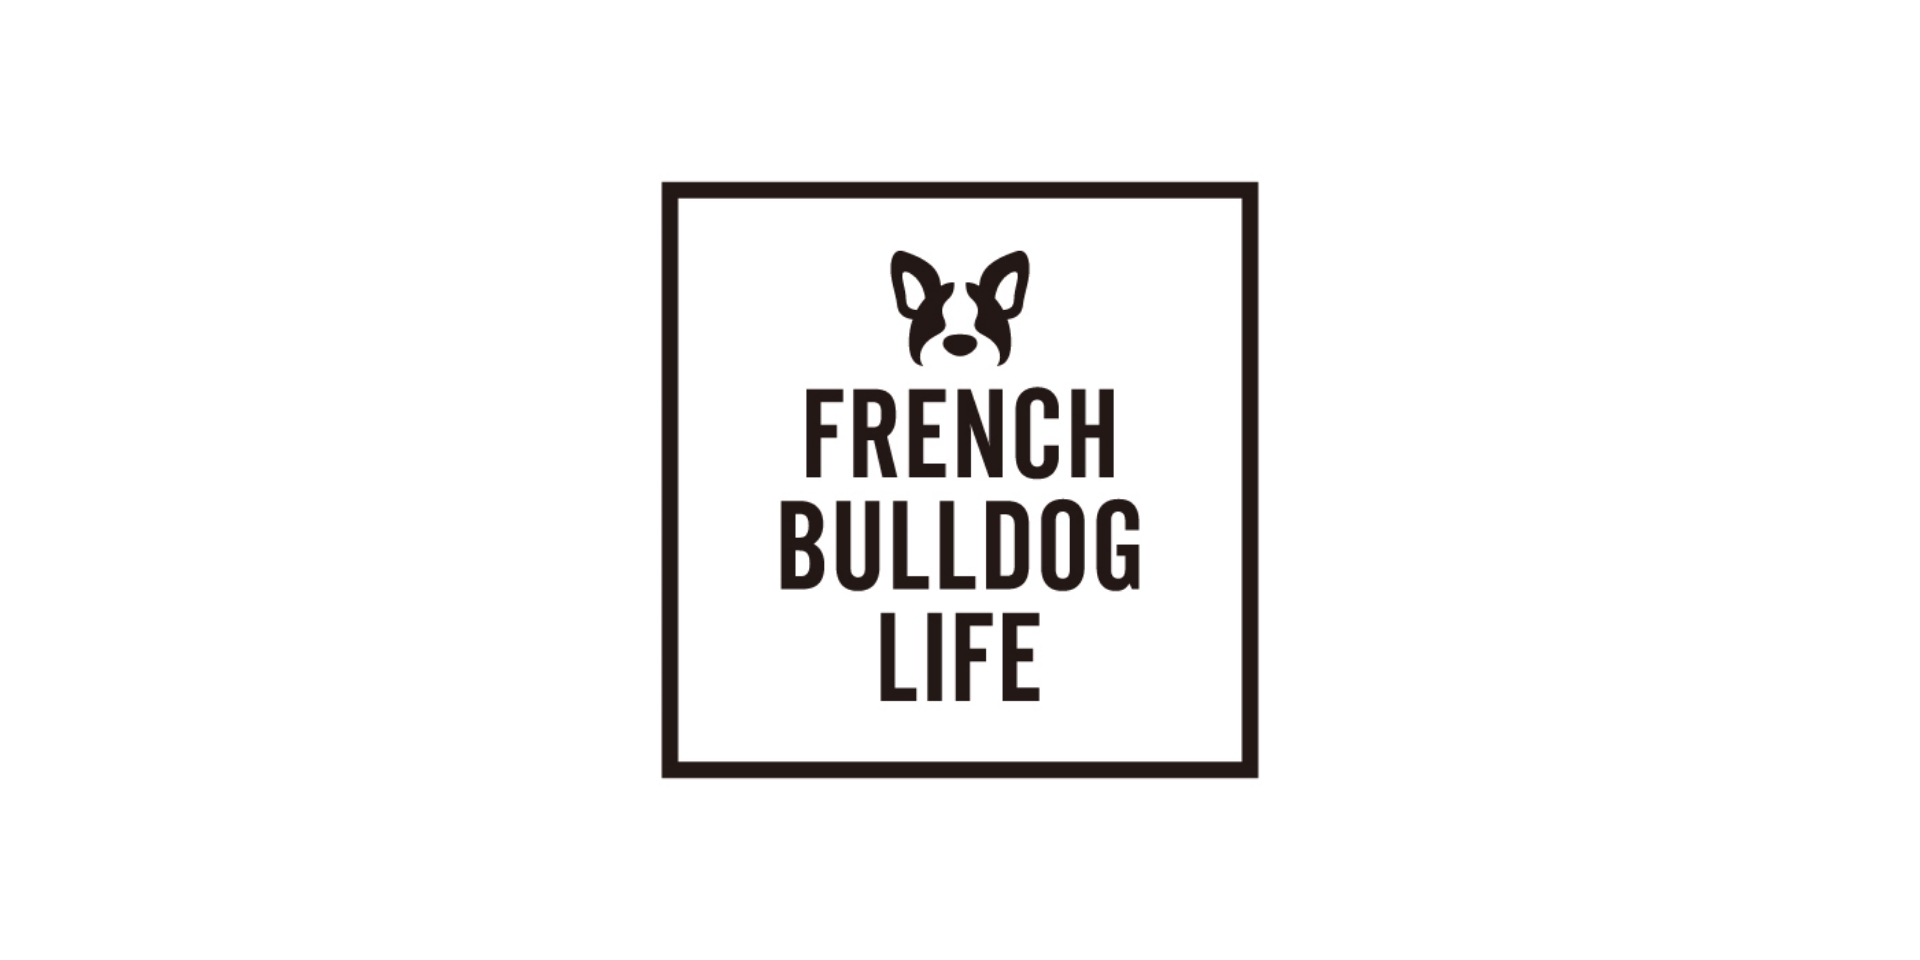 FRENCH BULLDOG LIFE